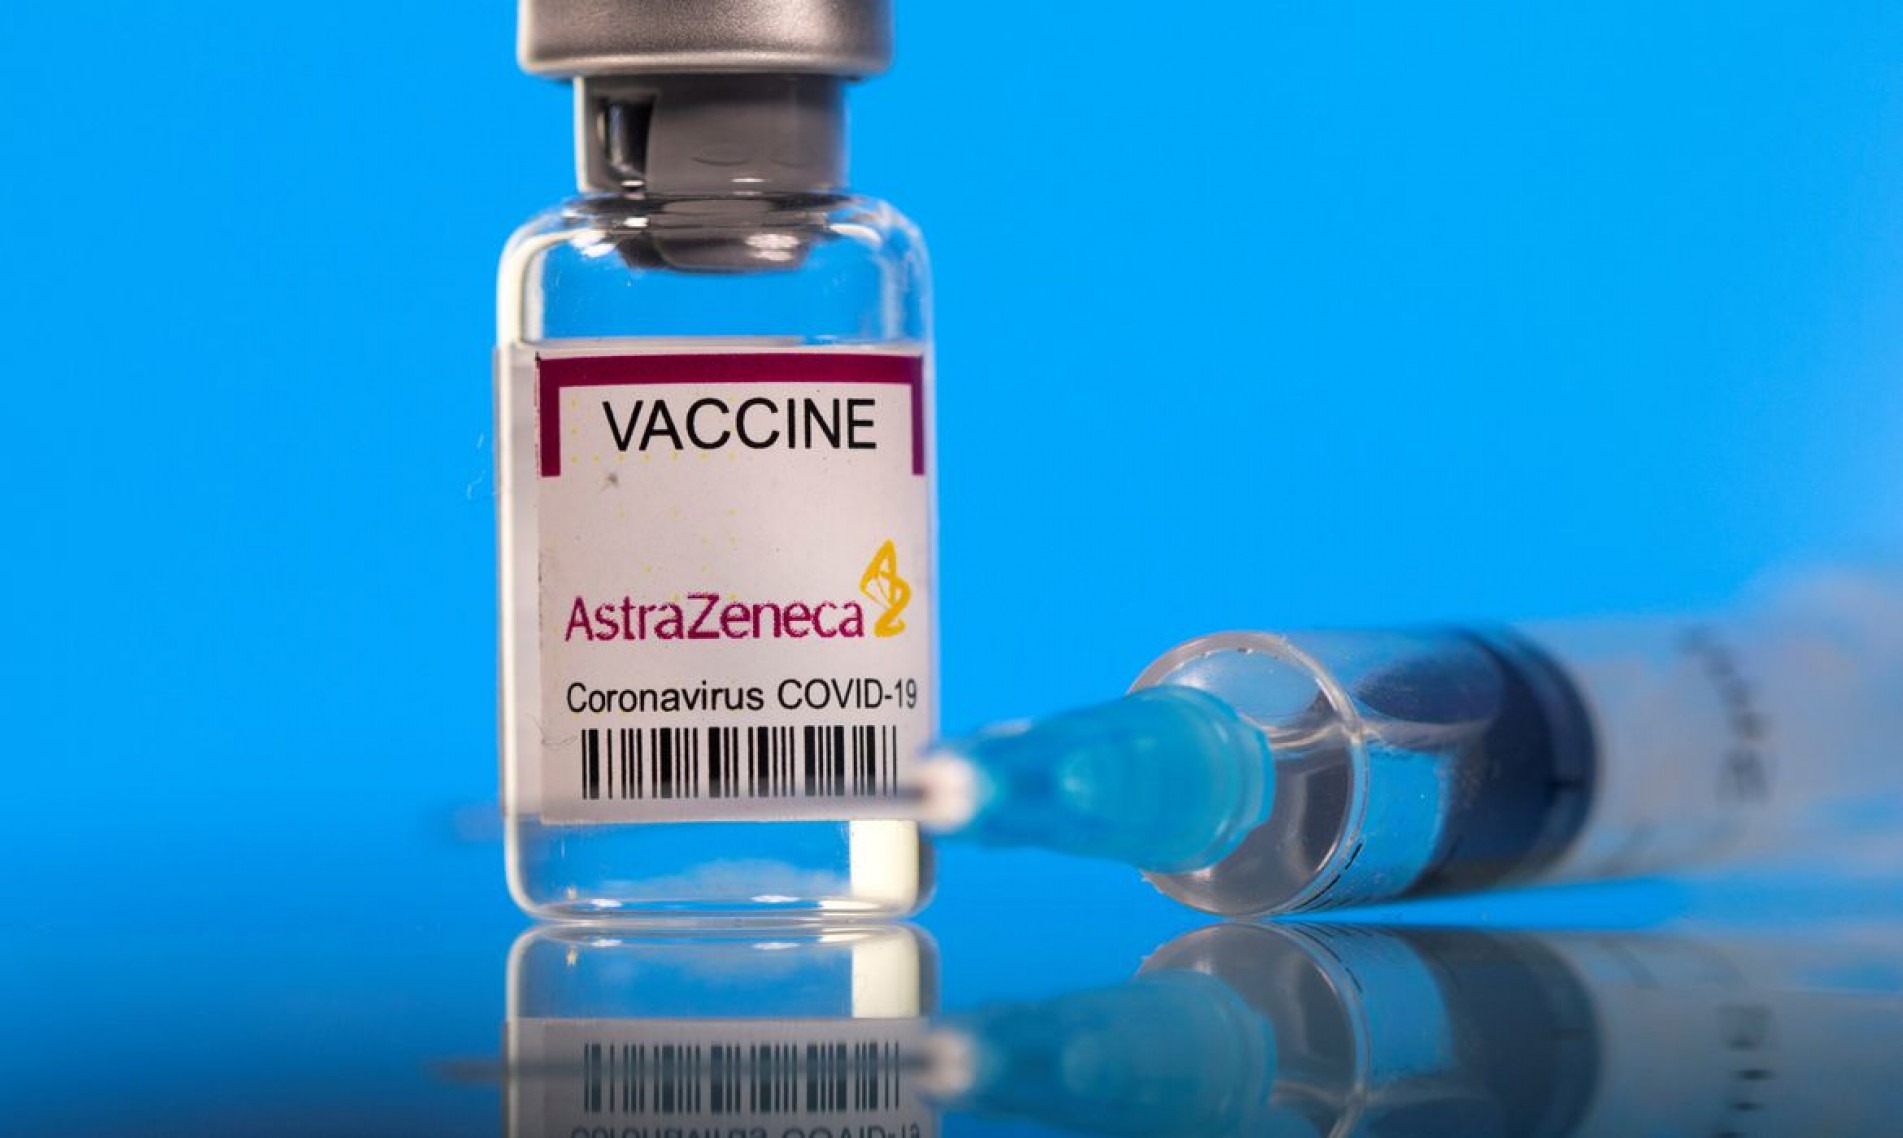 Vacina da AstraZeneca contra o coronavírus